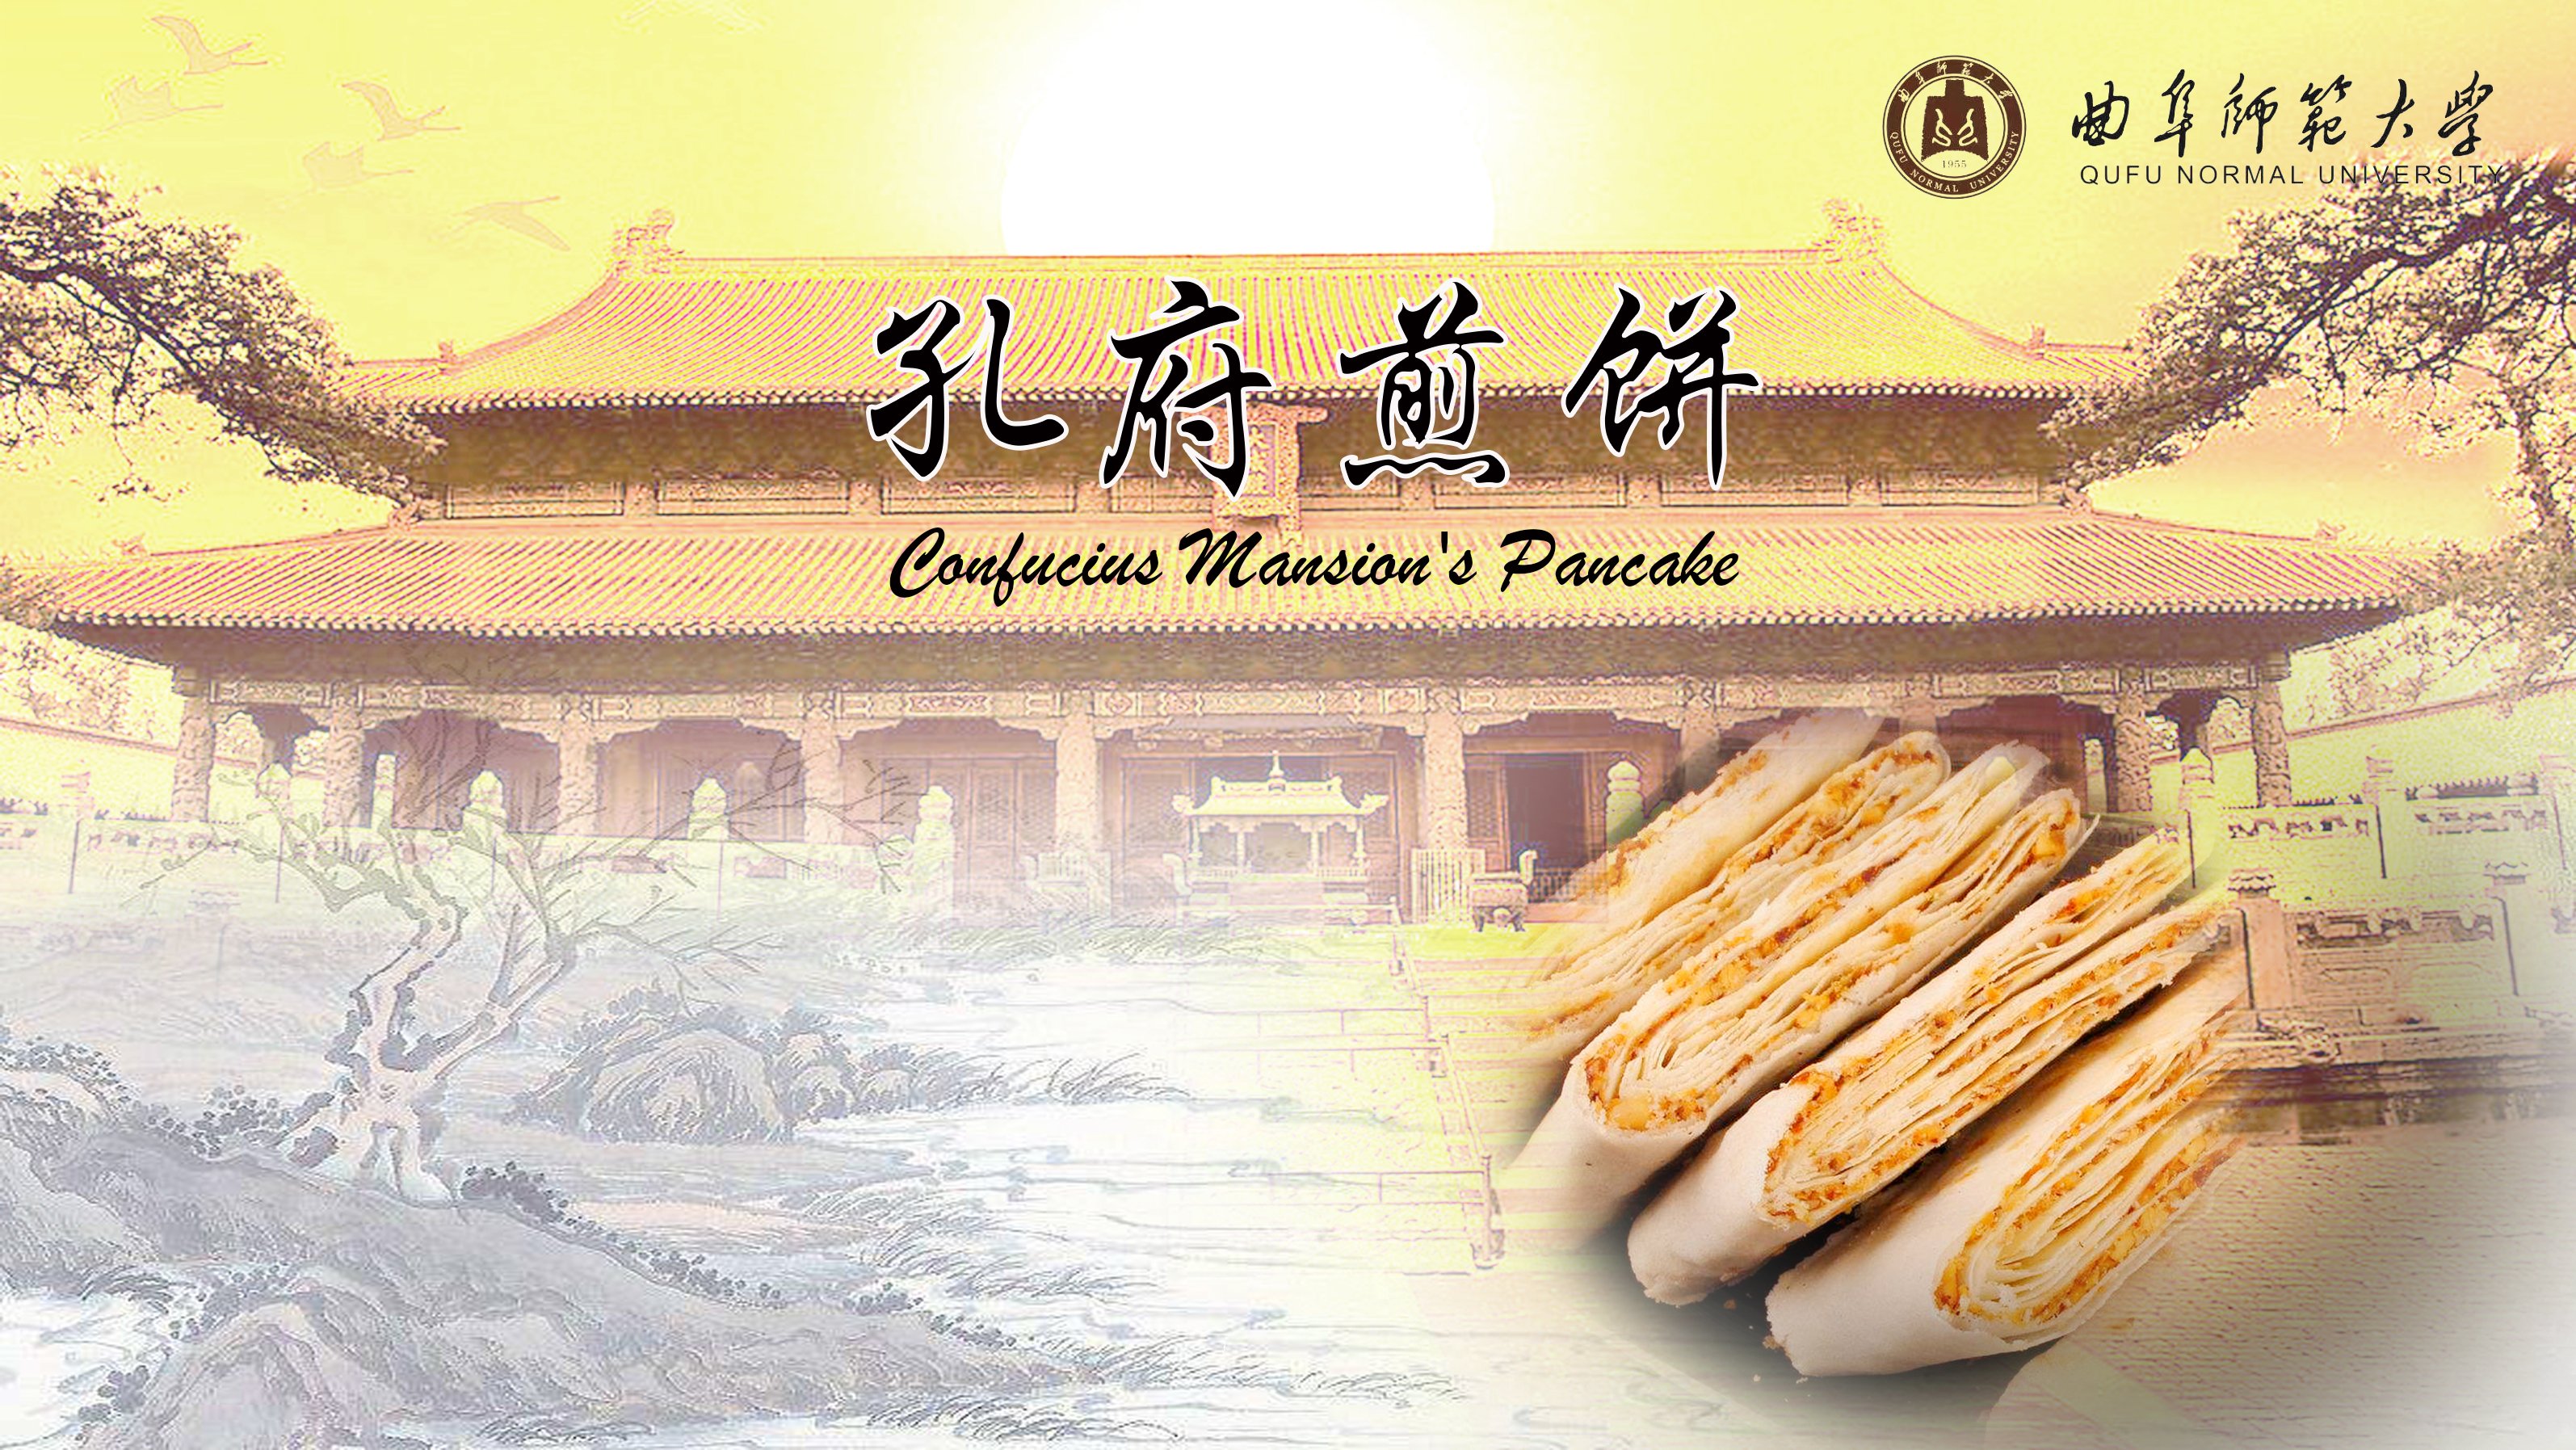 Confucius Mansion’s Pancakes